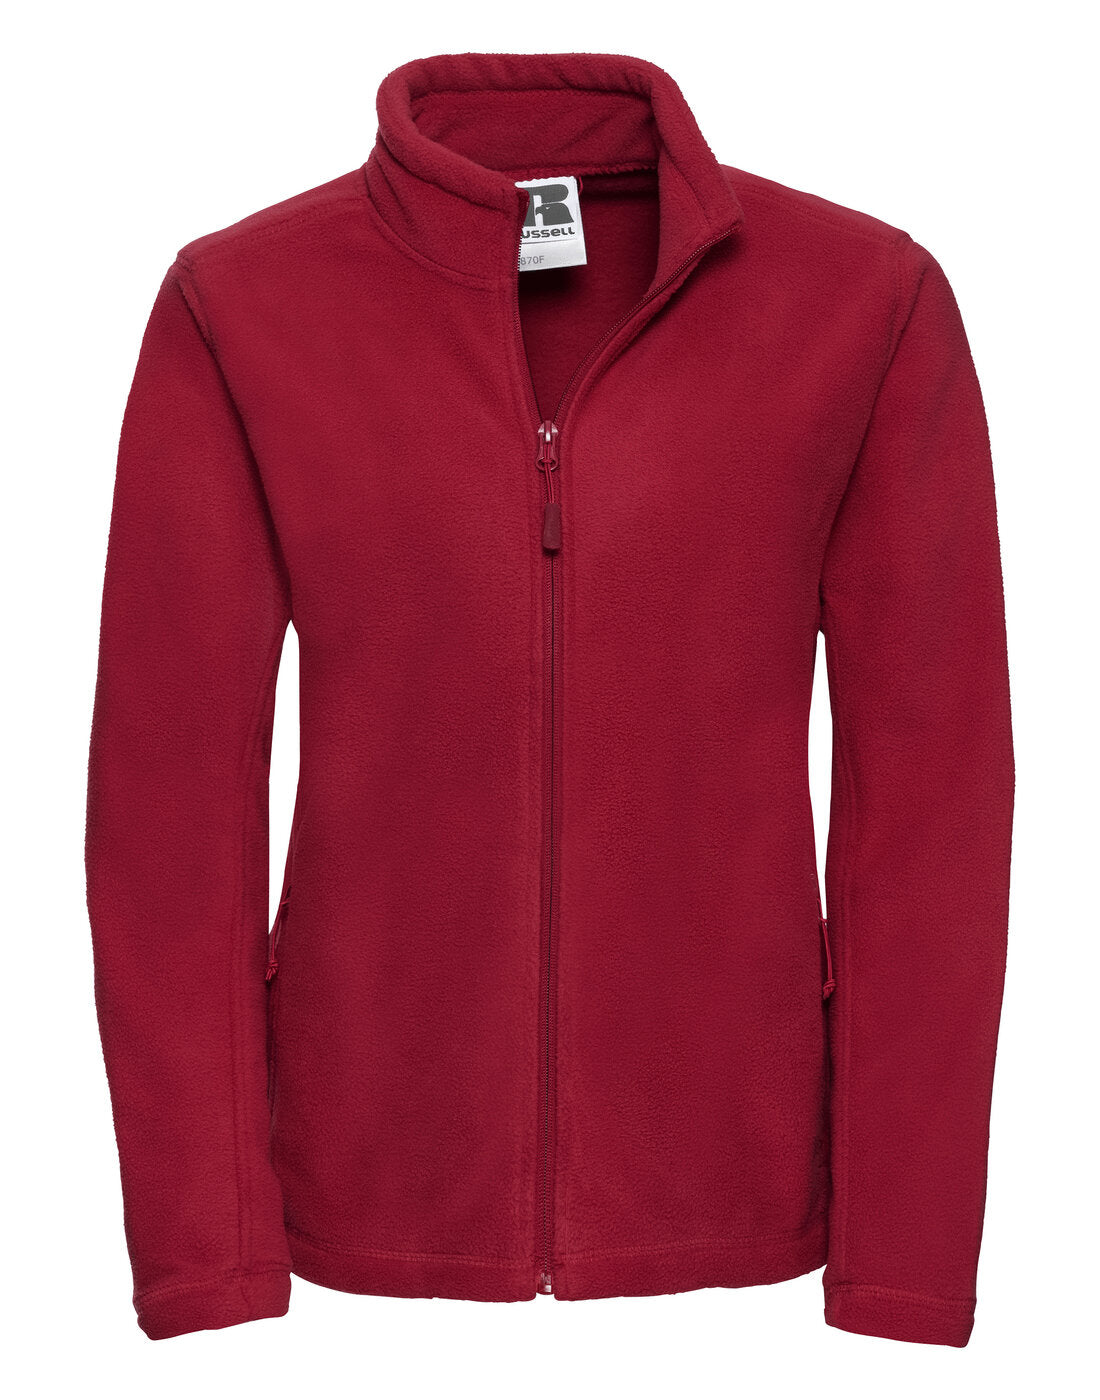 Russell Ladies Full Zip Outdoor Fleece Classic Red